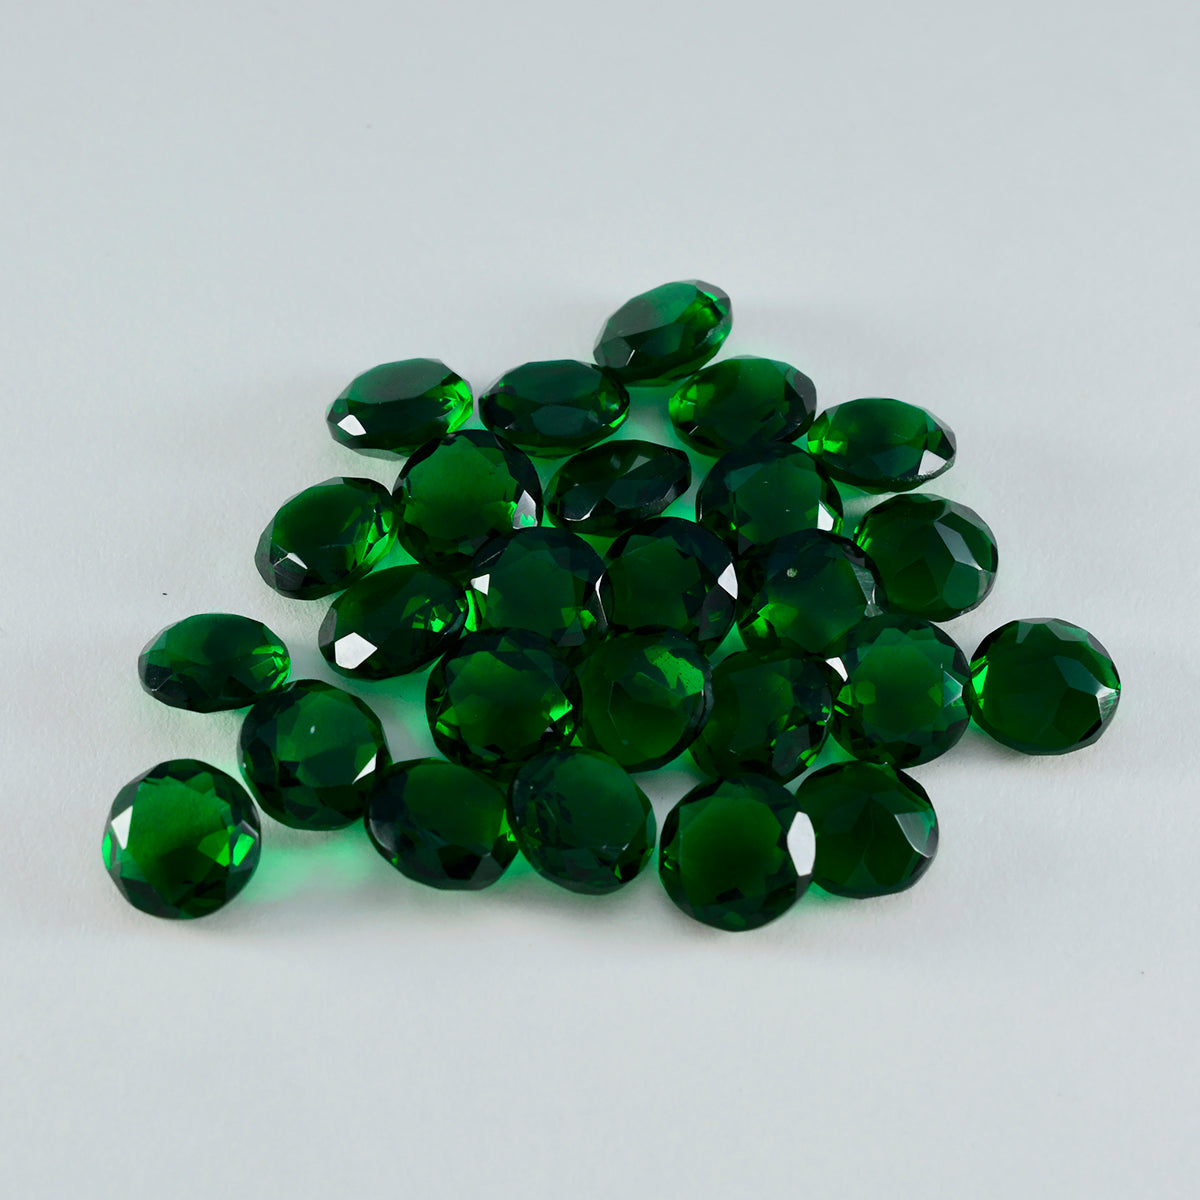 riyogems 1шт зеленый изумруд cz ограненный 4x4 мм круглая форма драгоценный камень удивительного качества